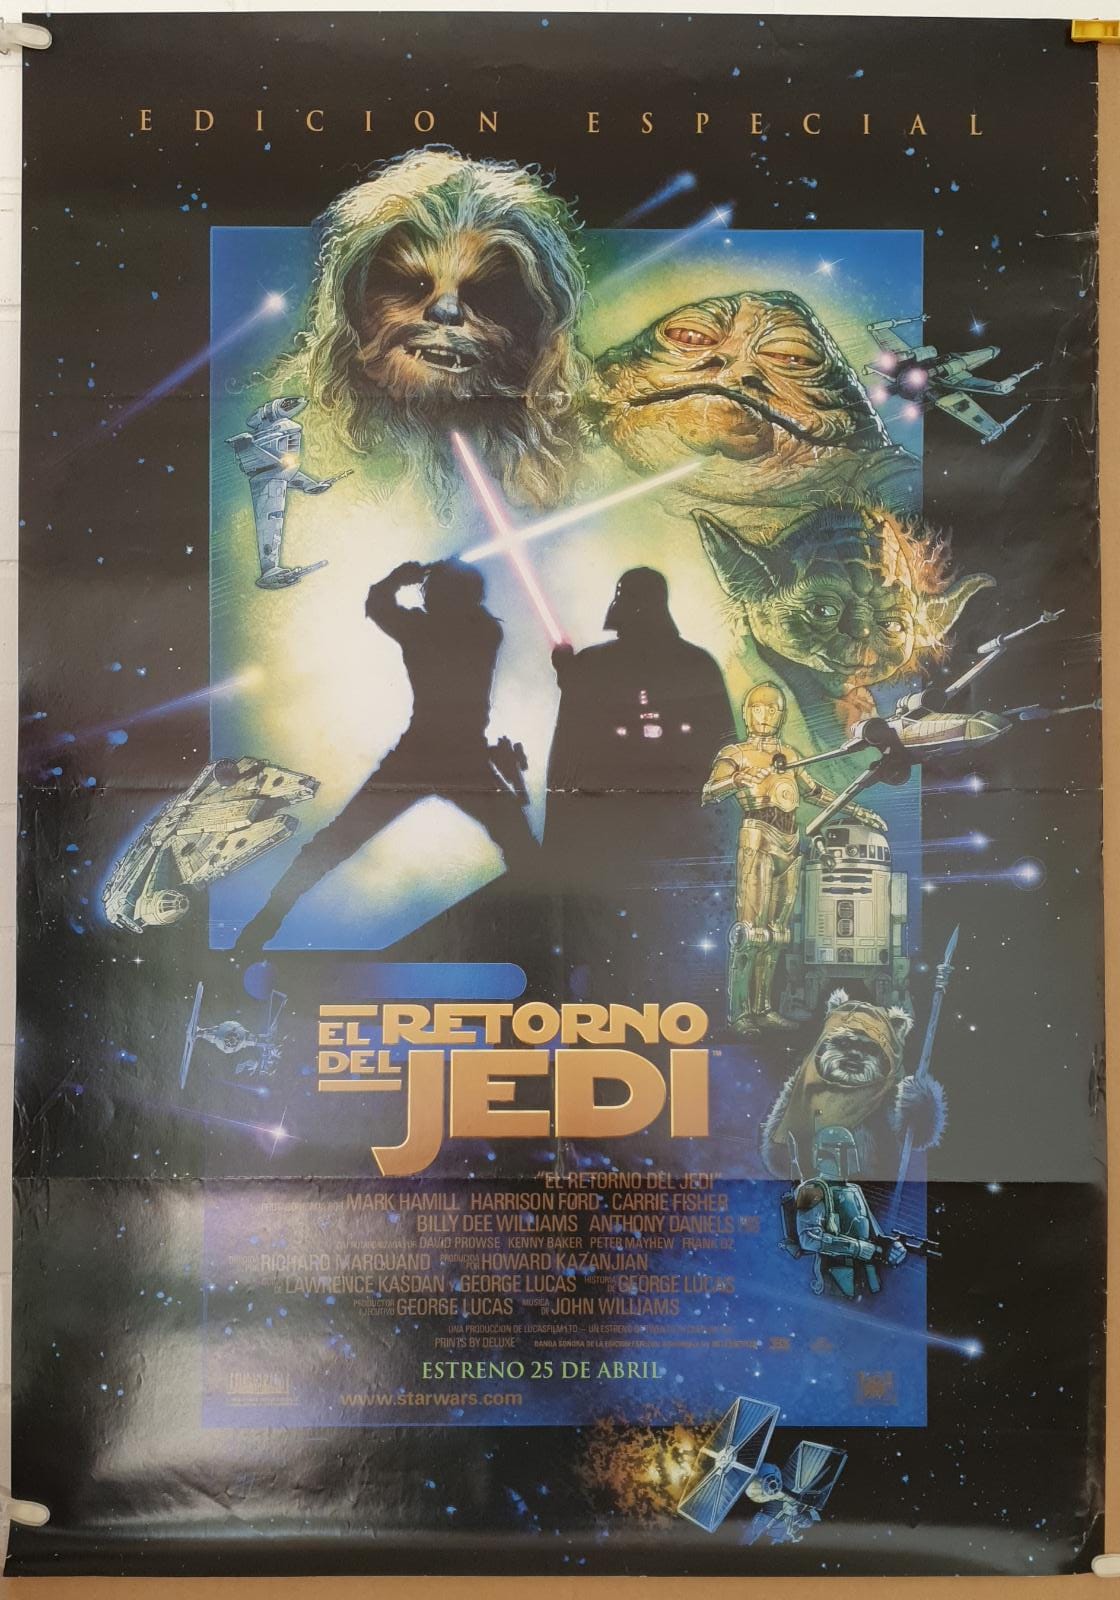 El Retorno del Jedi. Cartel (100x70) Edición Especial, 1997